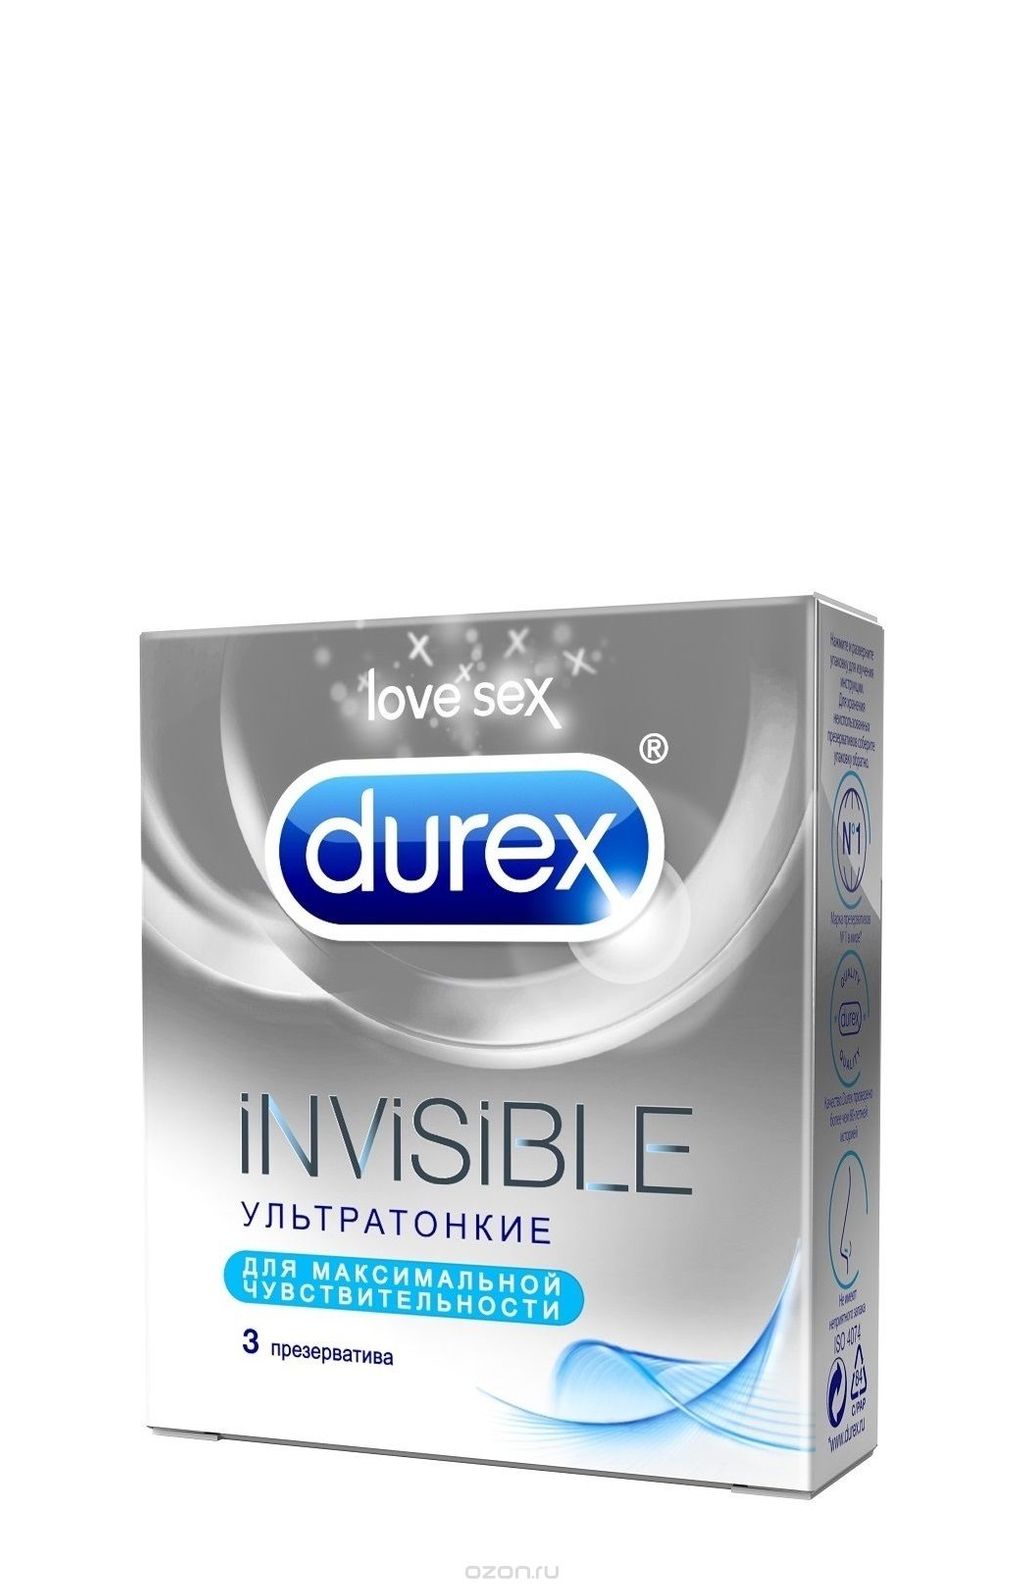 Презервативы Durex Invisible, презерватив, ультратонкие, 3 шт.